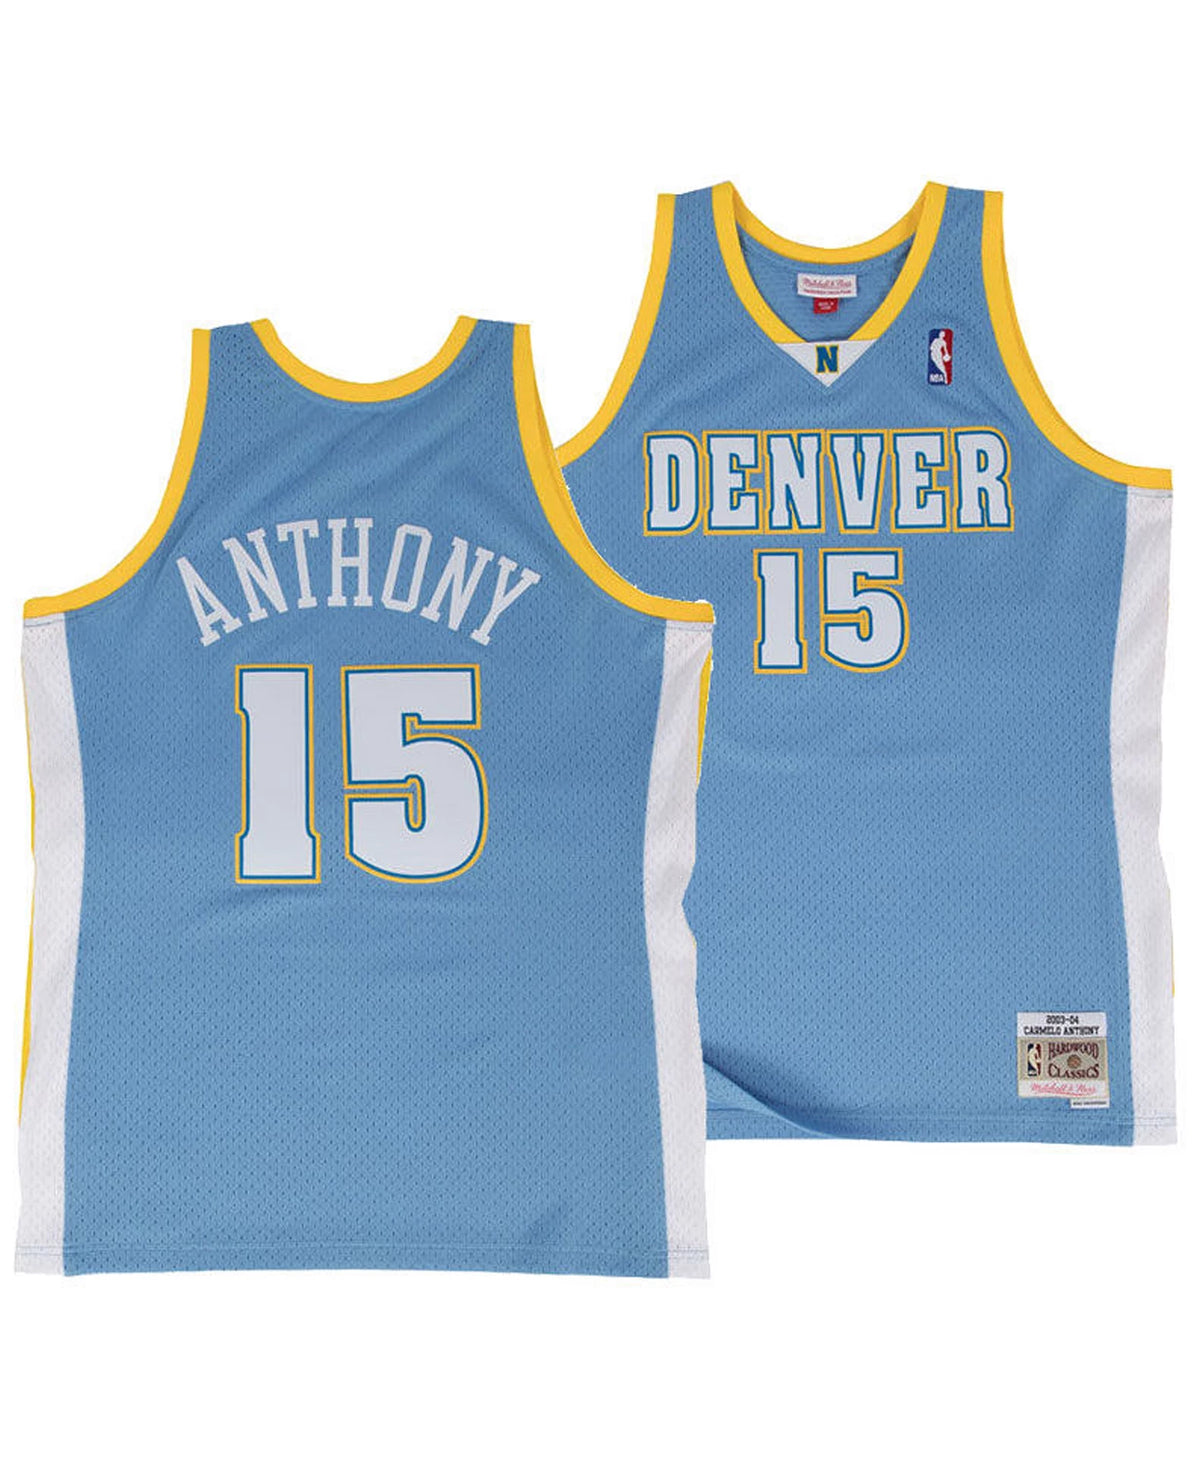 Kids Carmelo Anthony Denver Nuggets 2003-04 Jersey